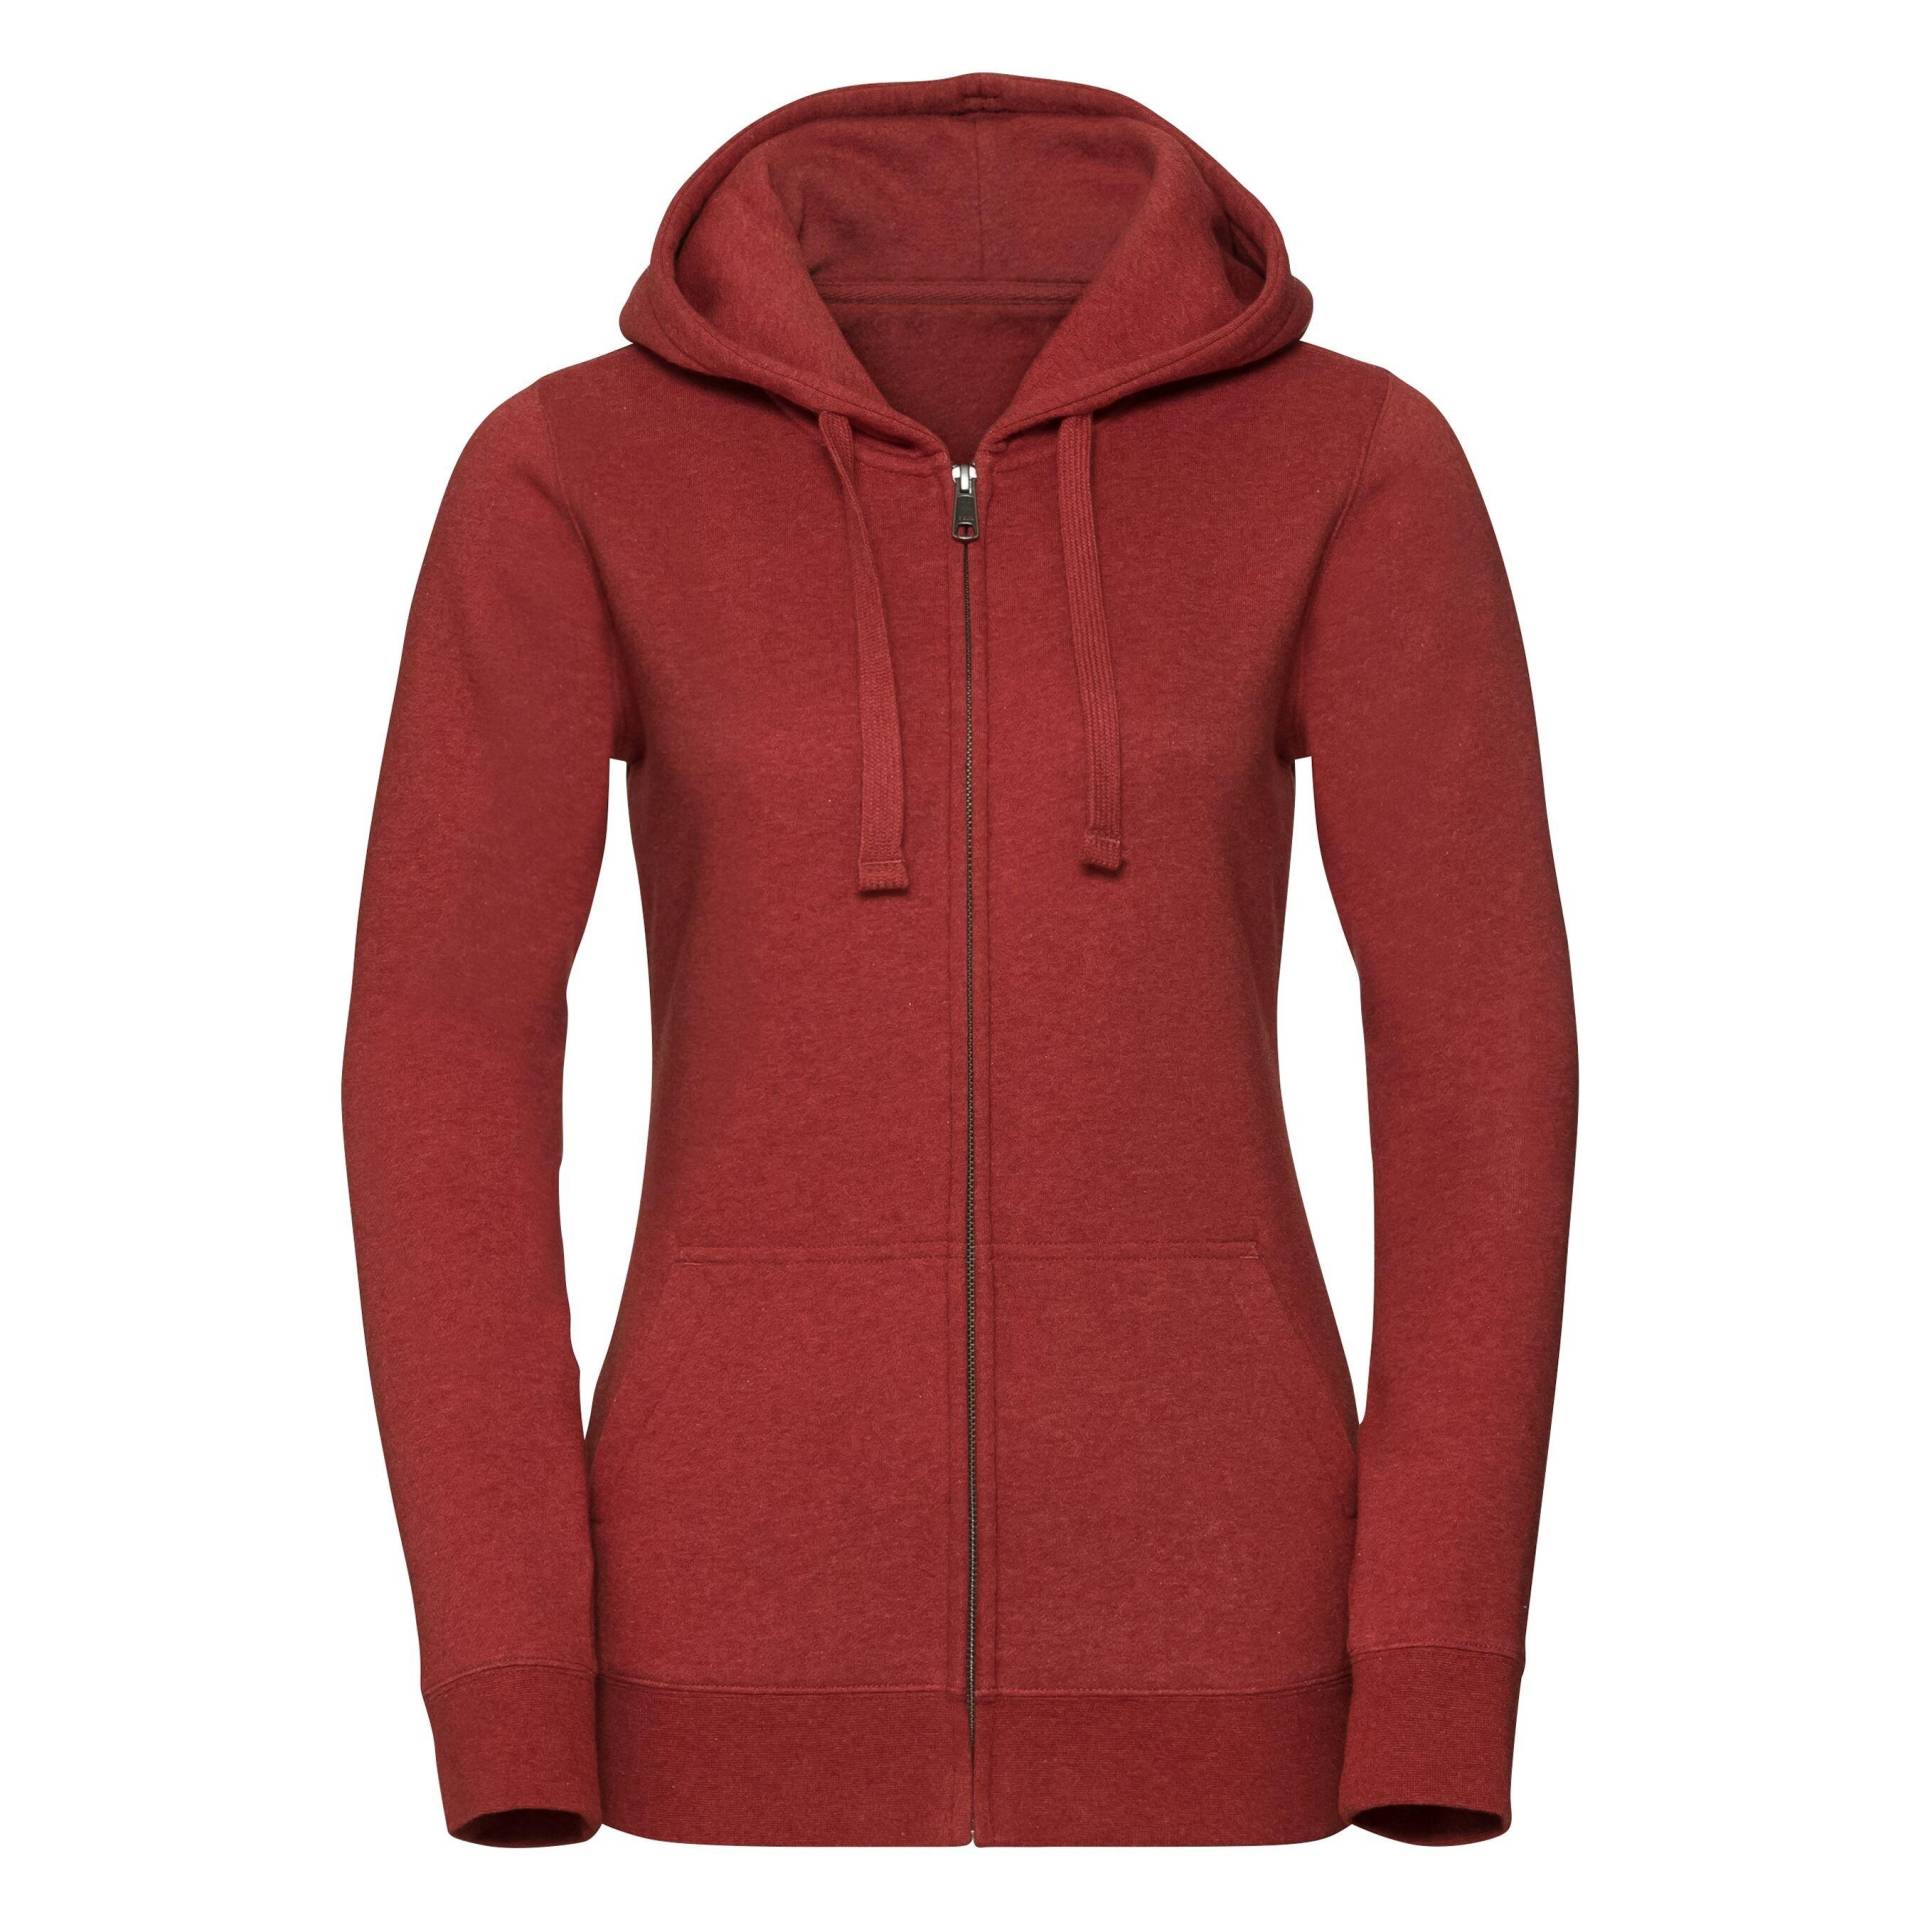 Authentic Sweatshirt Mit Reißverschluss Damen Rot Bunt 36 von Russell